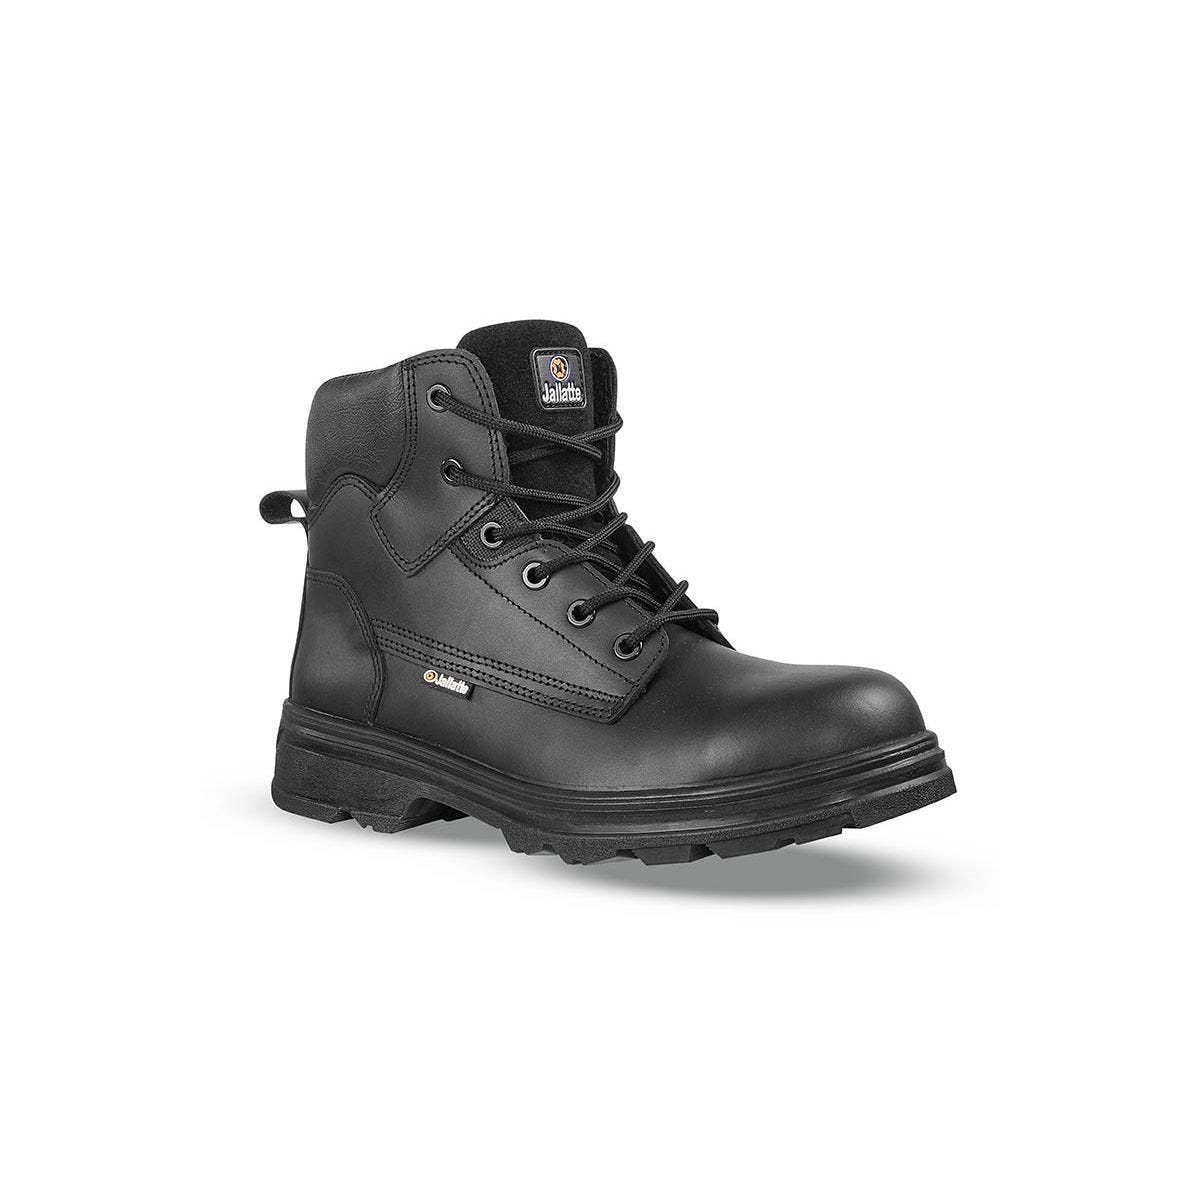 Chaussures de sécurité hautes JALGERAINT S3 - JALLATTE - Taille 47 0